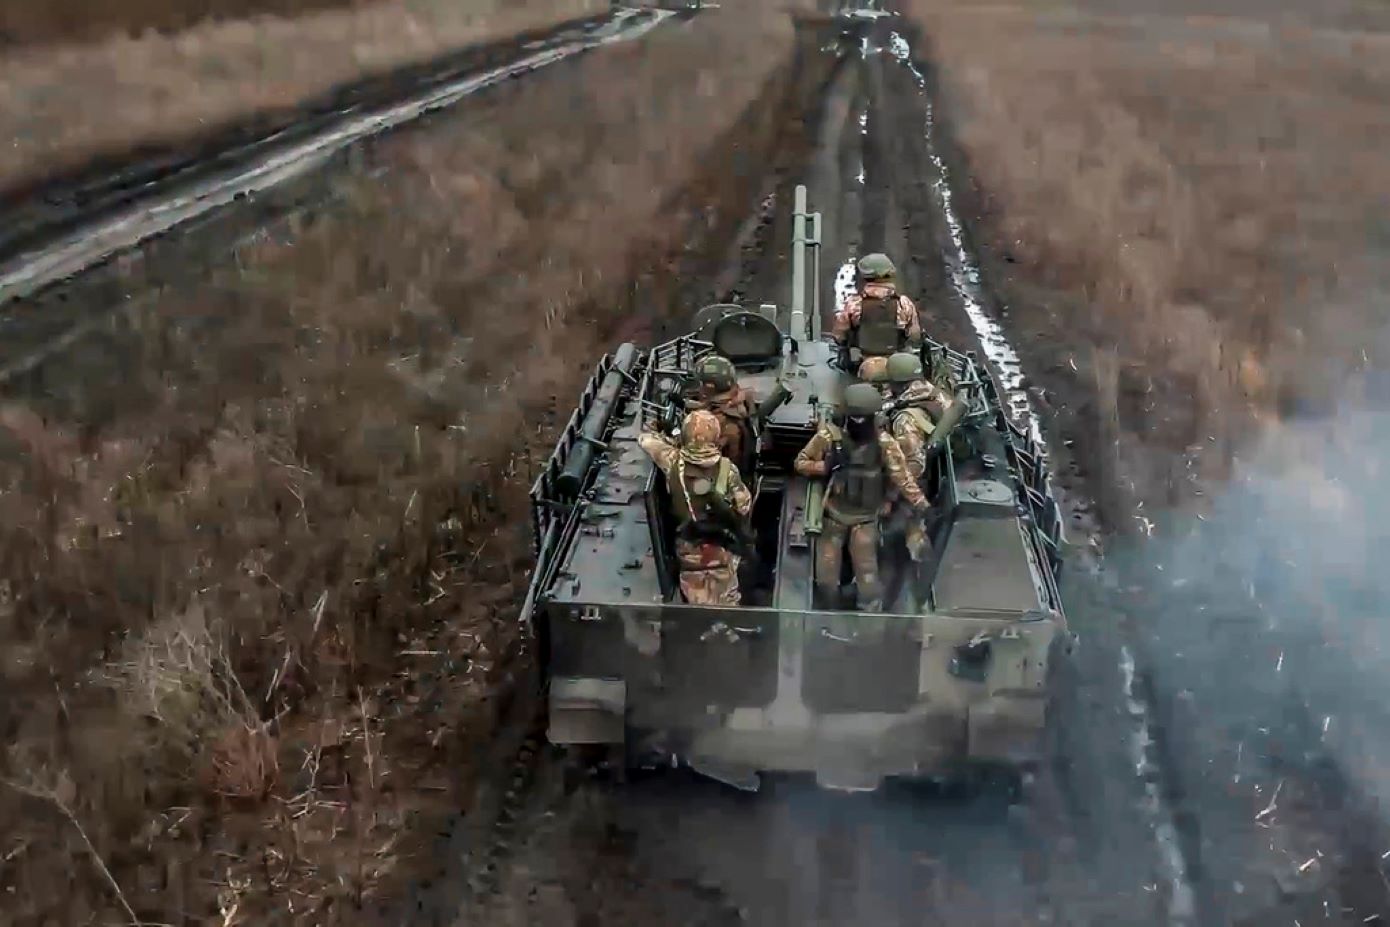 Ο πόλεμος θα εισέλθει σε κρίσιμη φάση τους επόμενους δύο μήνες, εκτίμησε ο επικεφαλής του ουκρανικού στρατού ξηράς